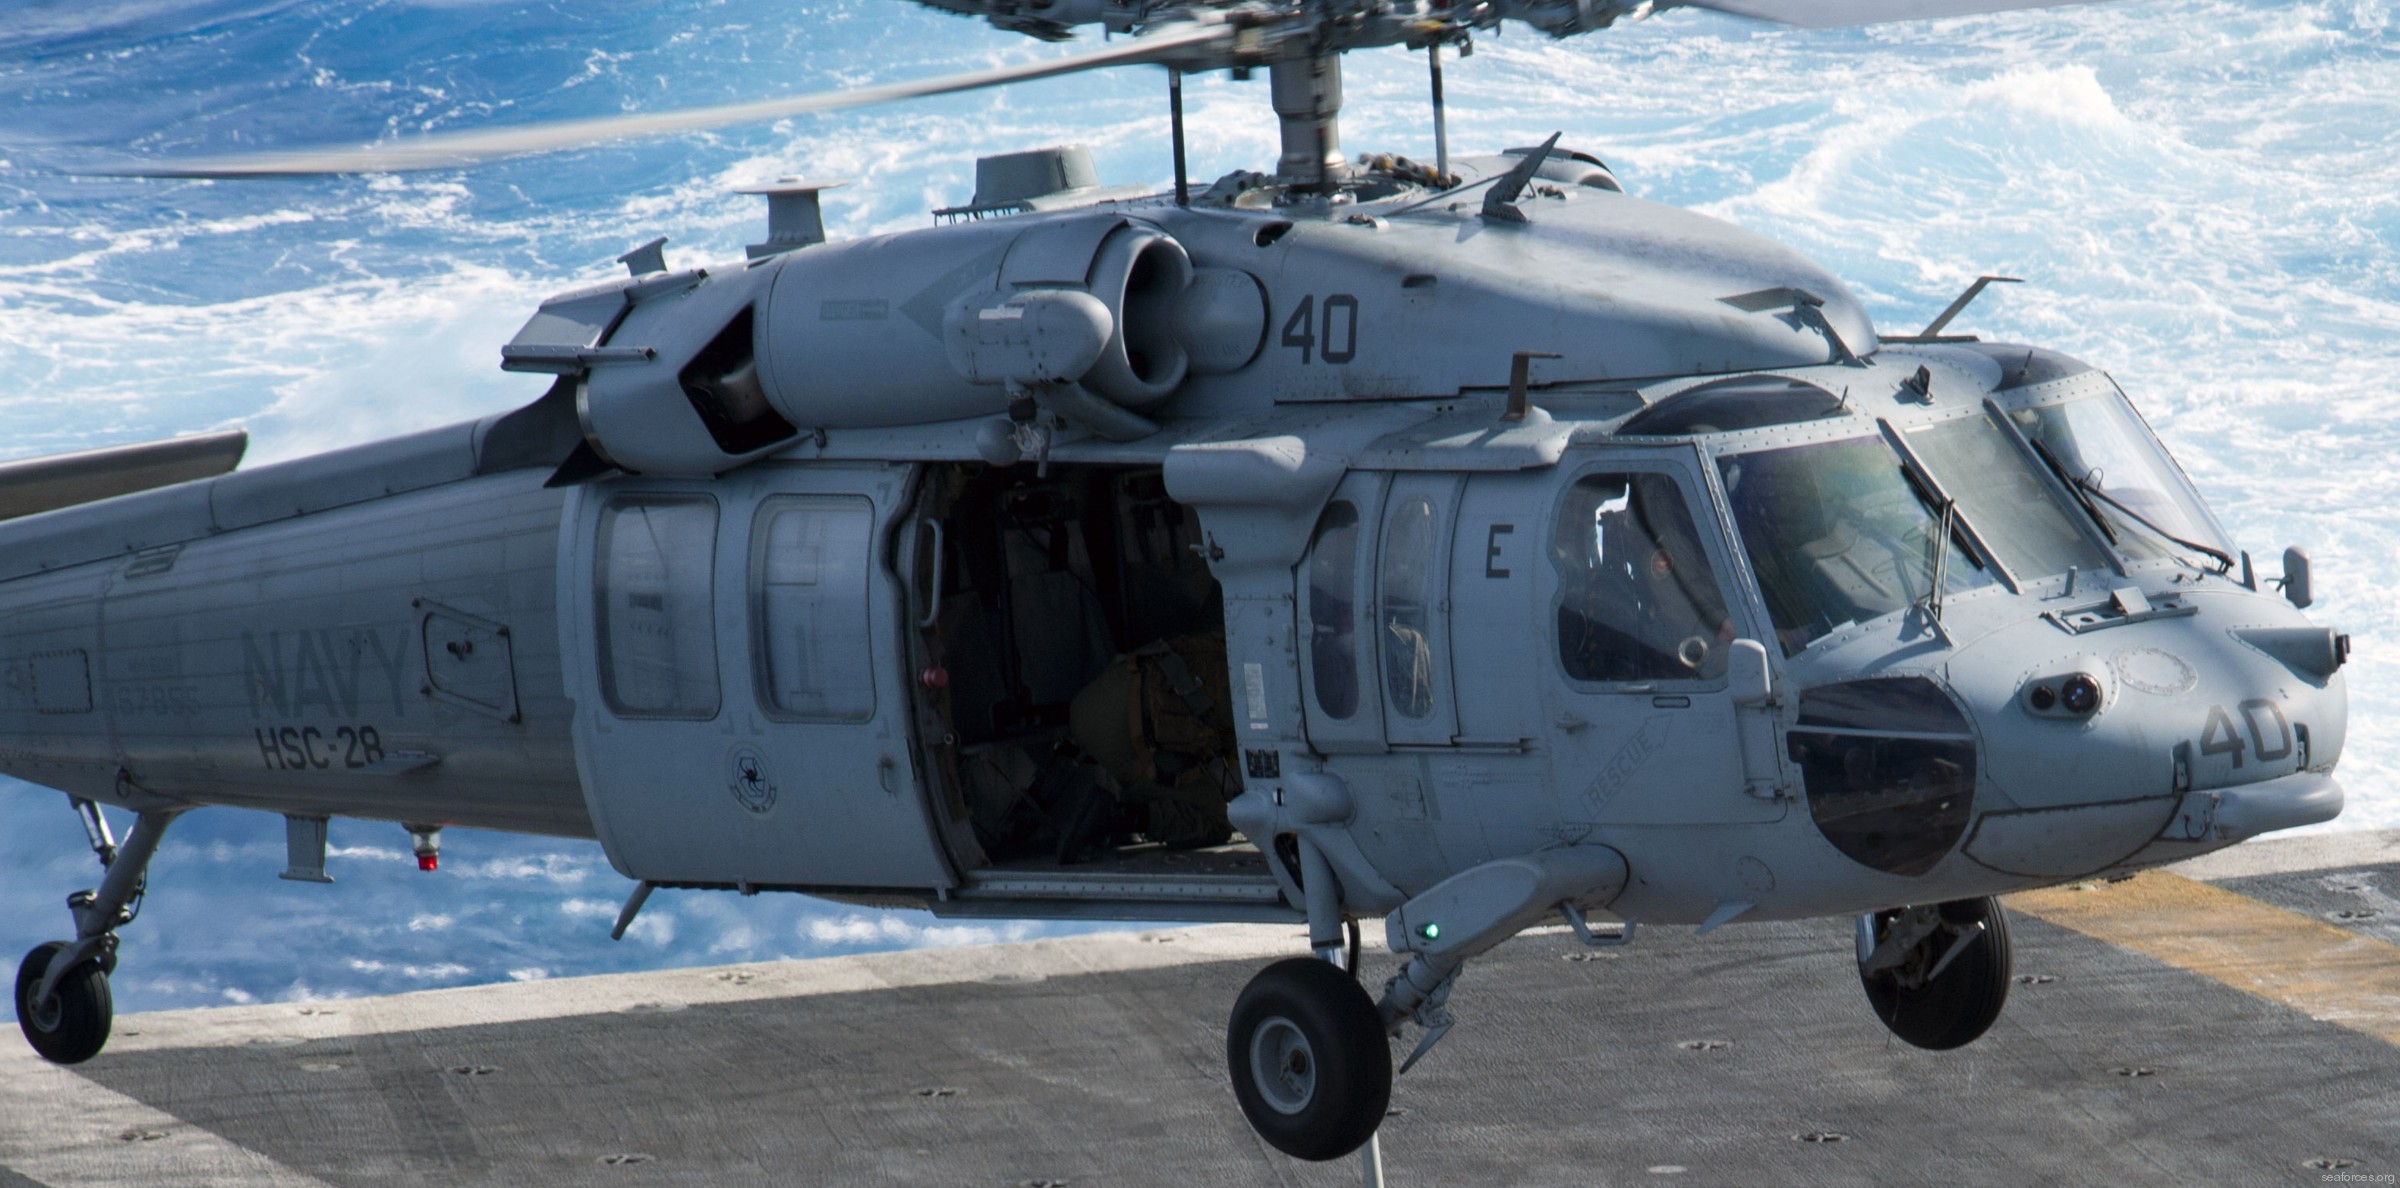 hsc-28 dragon whales helicopter sea combat squadron mh-60s seahawk us navy 107 uss enterprise cvn-65